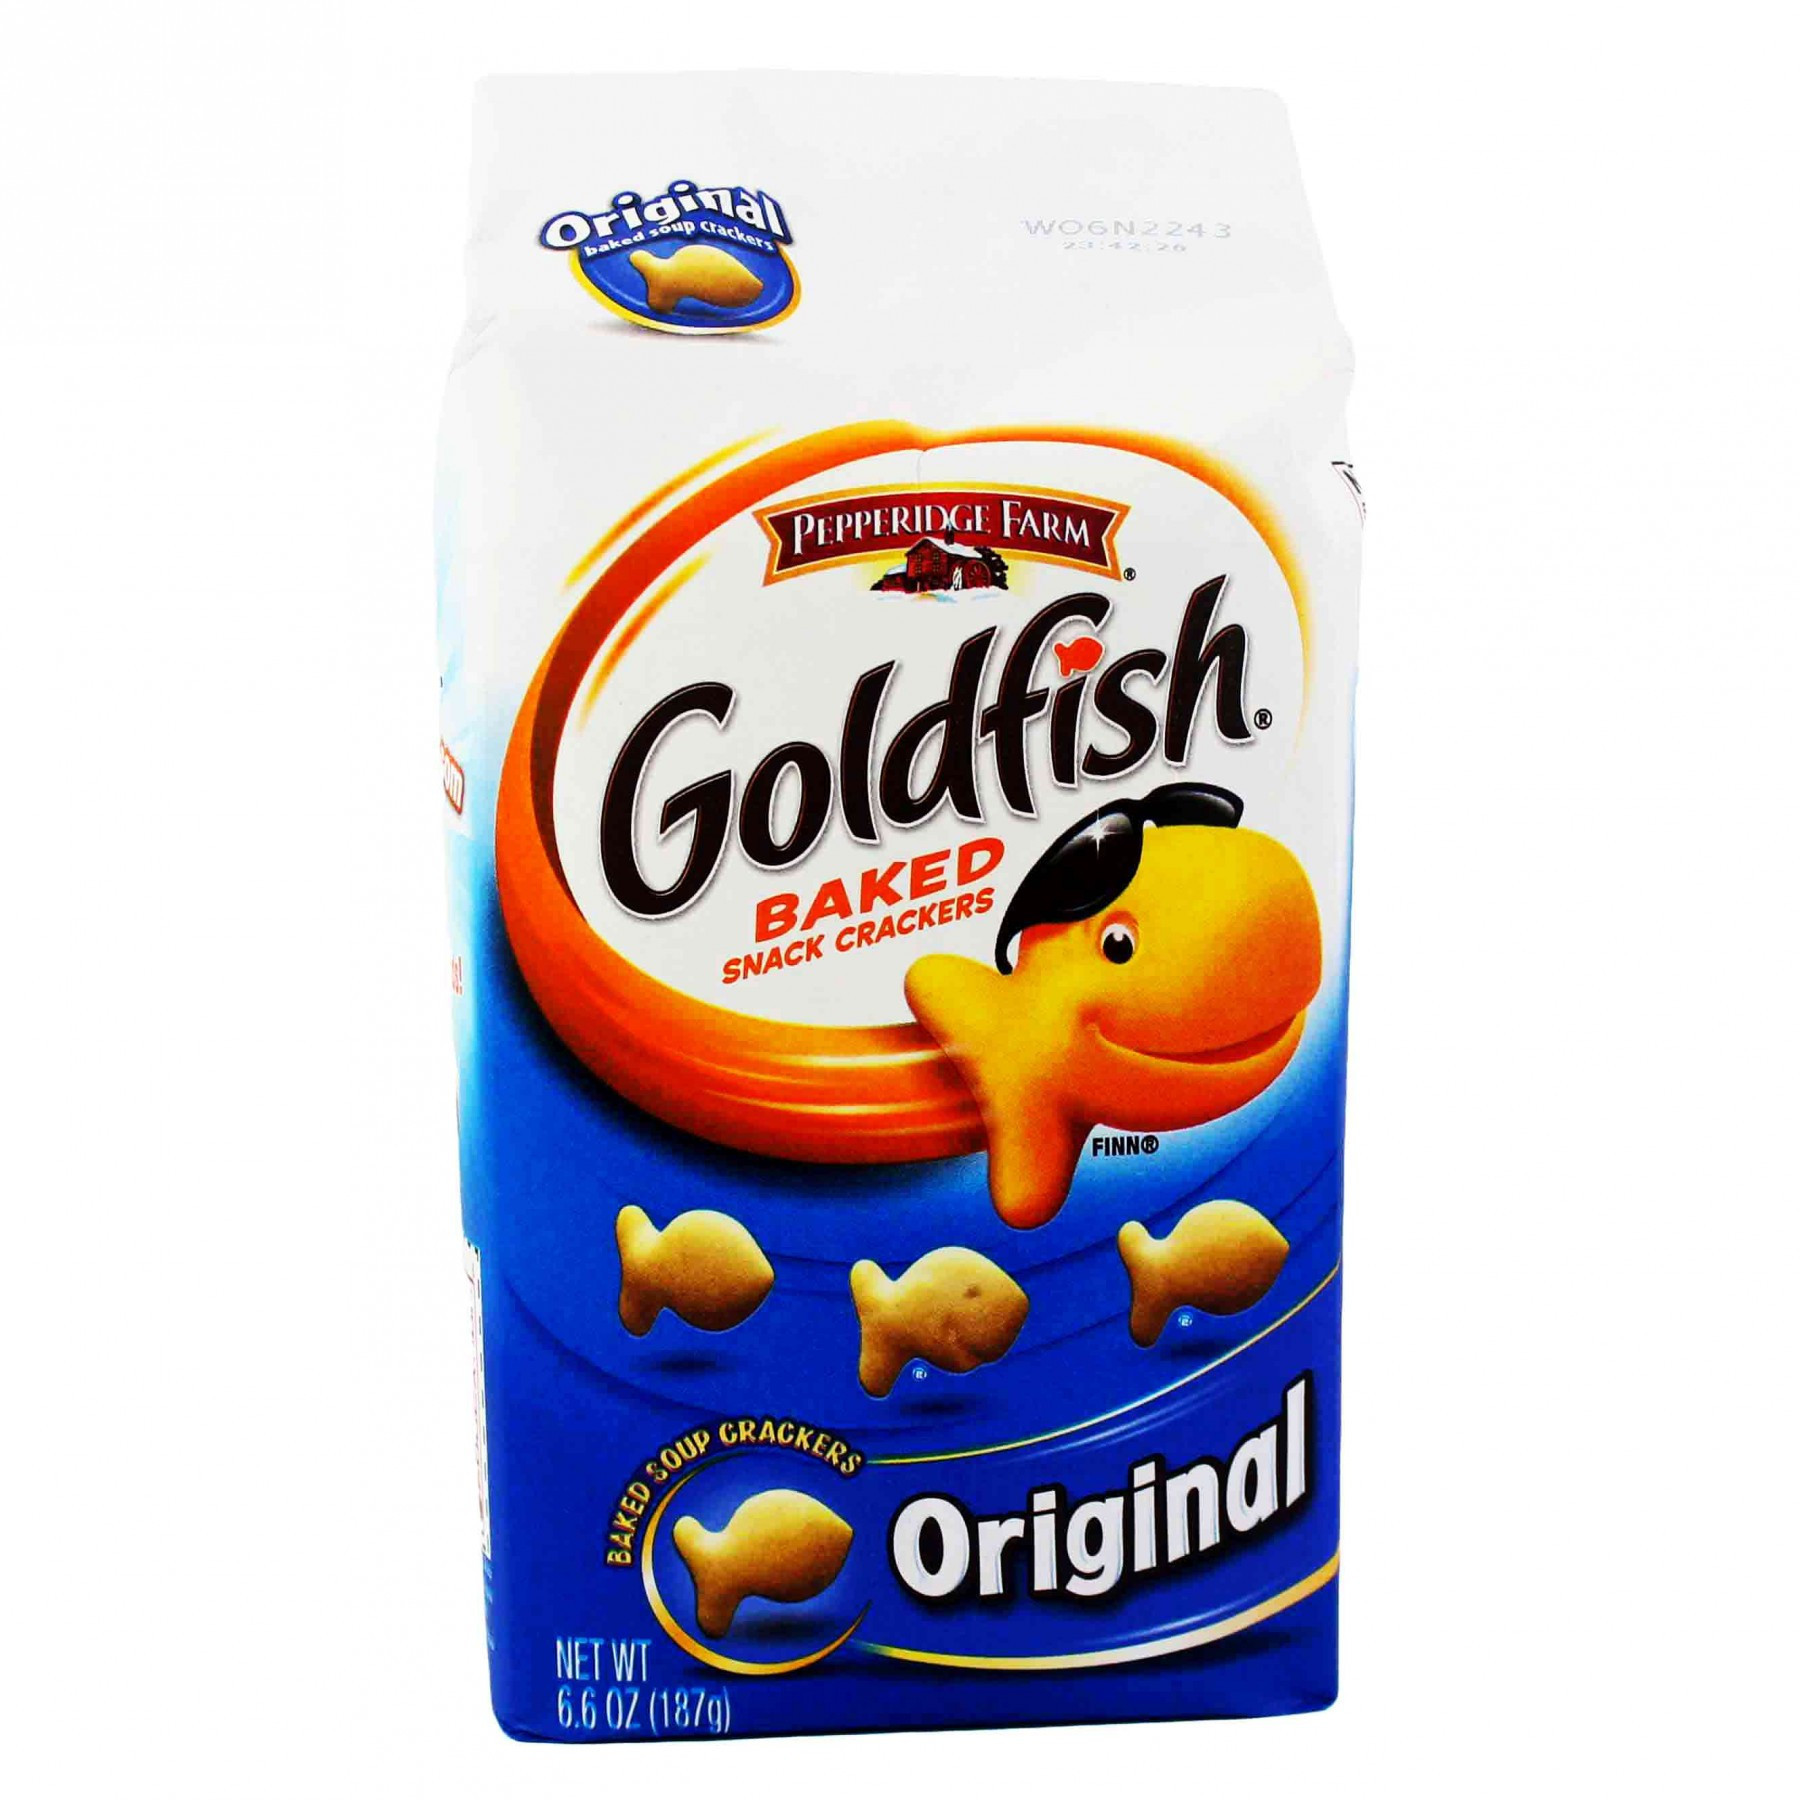 Original Goldfish Crackers Elegant the Best original Goldfish Crackers Best Recipes Ideas